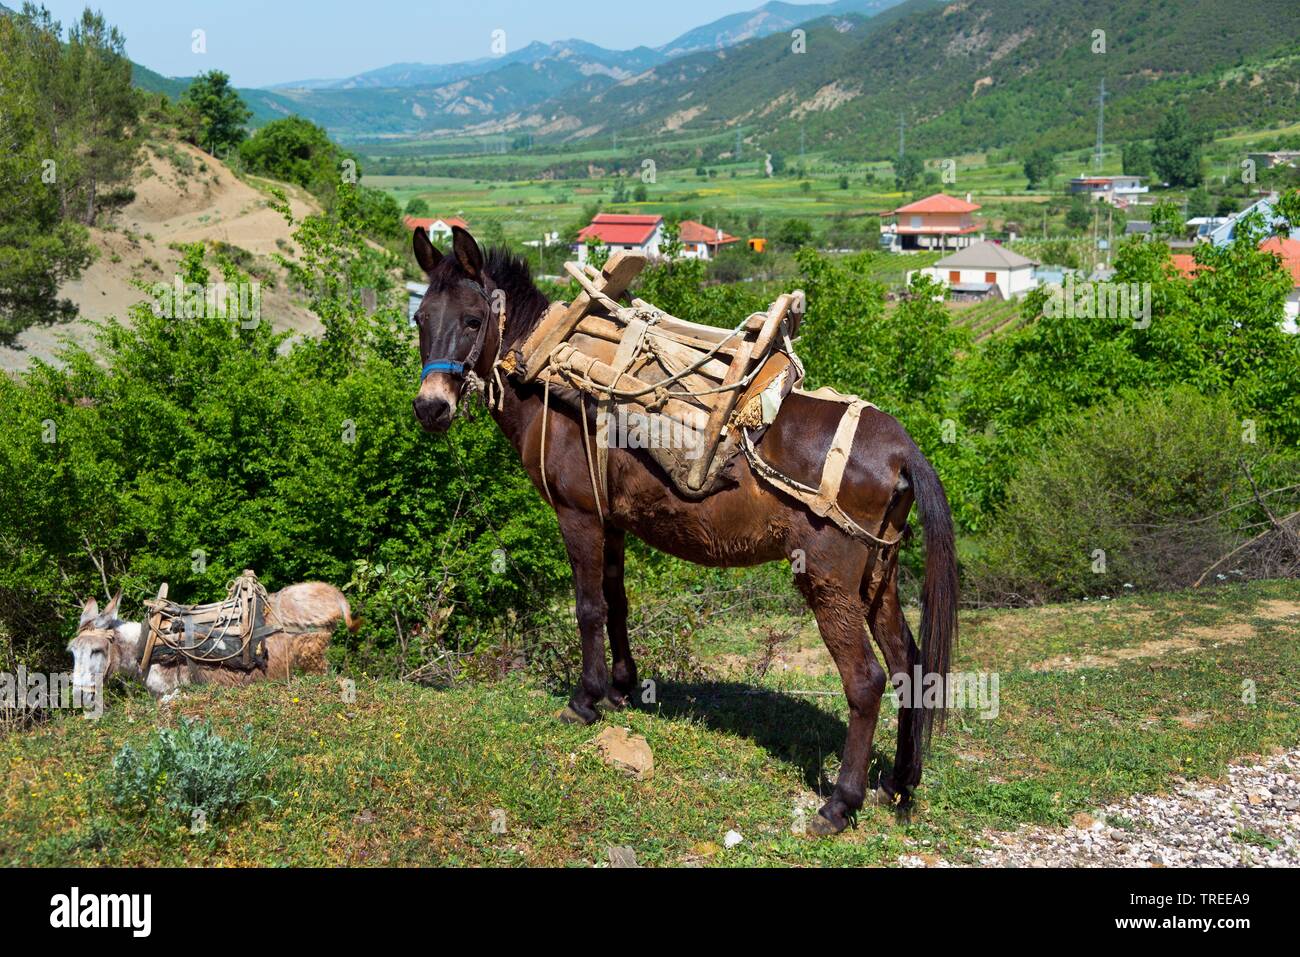 Domestic donkey (Equus asinus asinus), horse and donkey at wayside, Albania, Kaluth Stock Photo